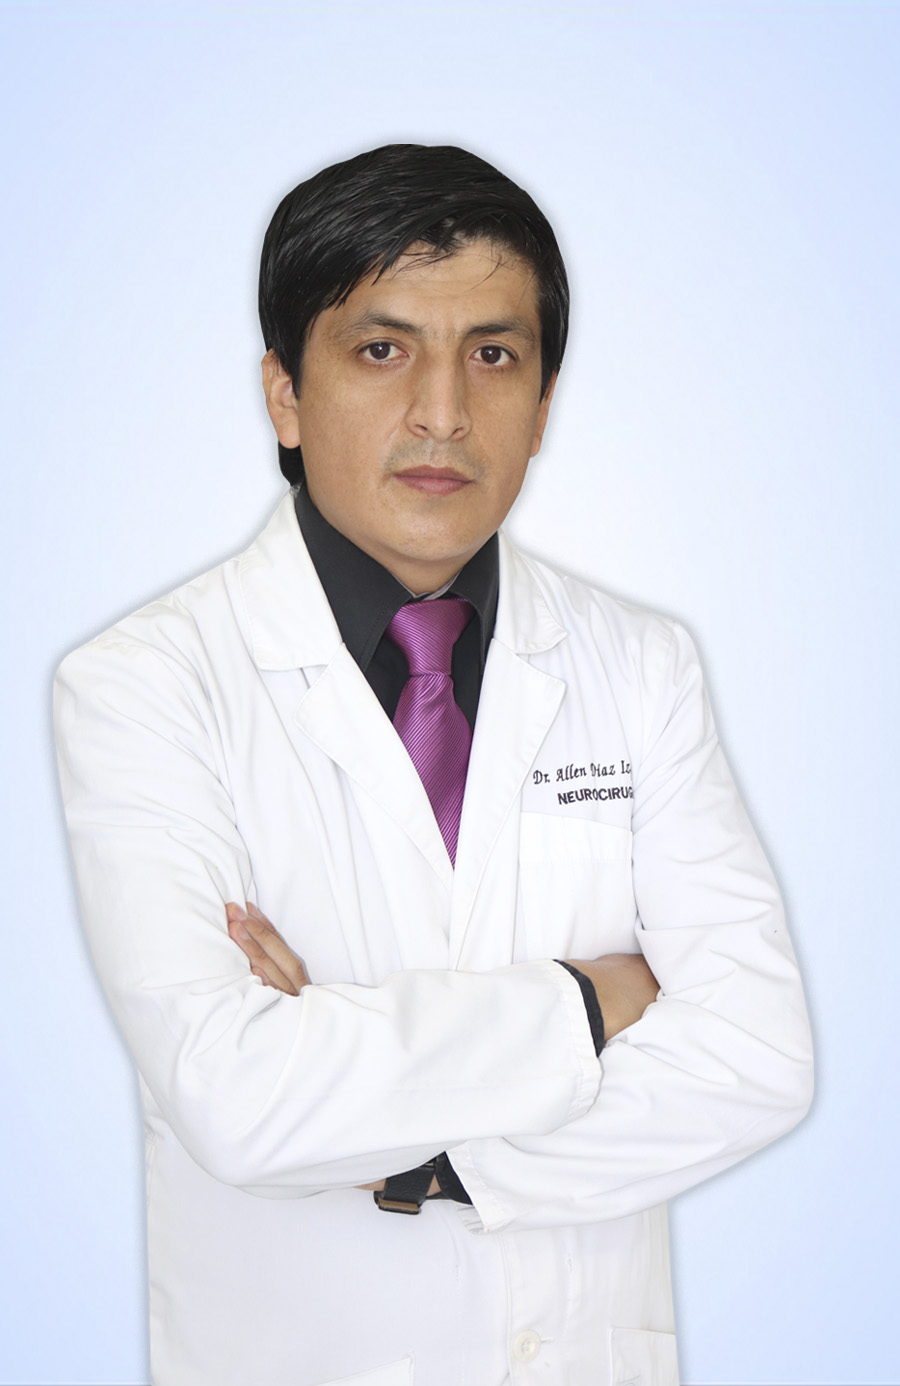 DR. DIAZ IZQUIERDO